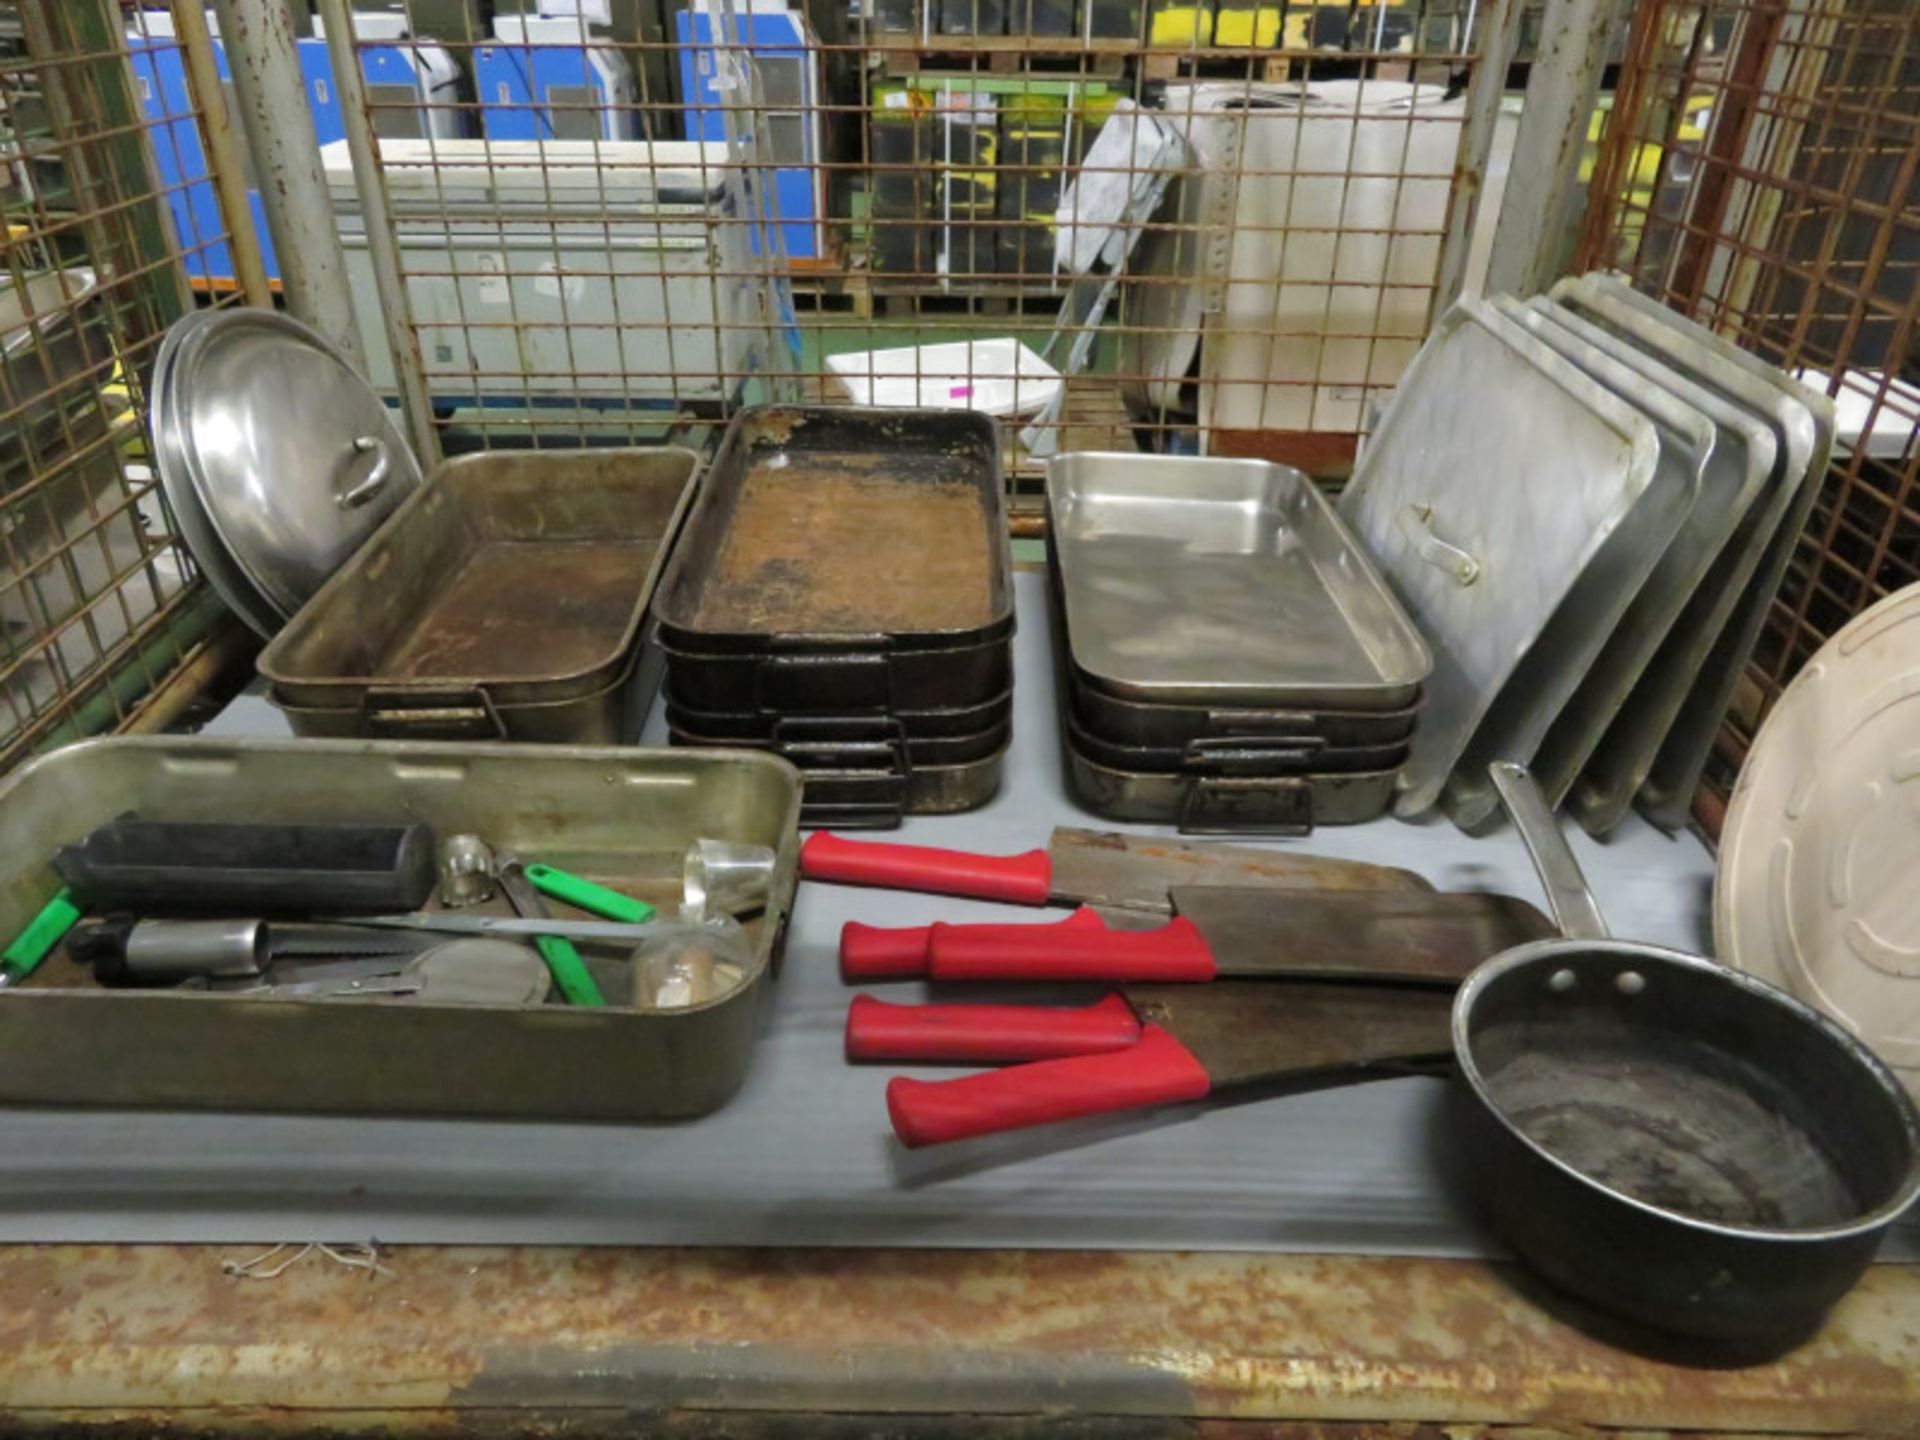 Cooking trays, pan lids, utensils